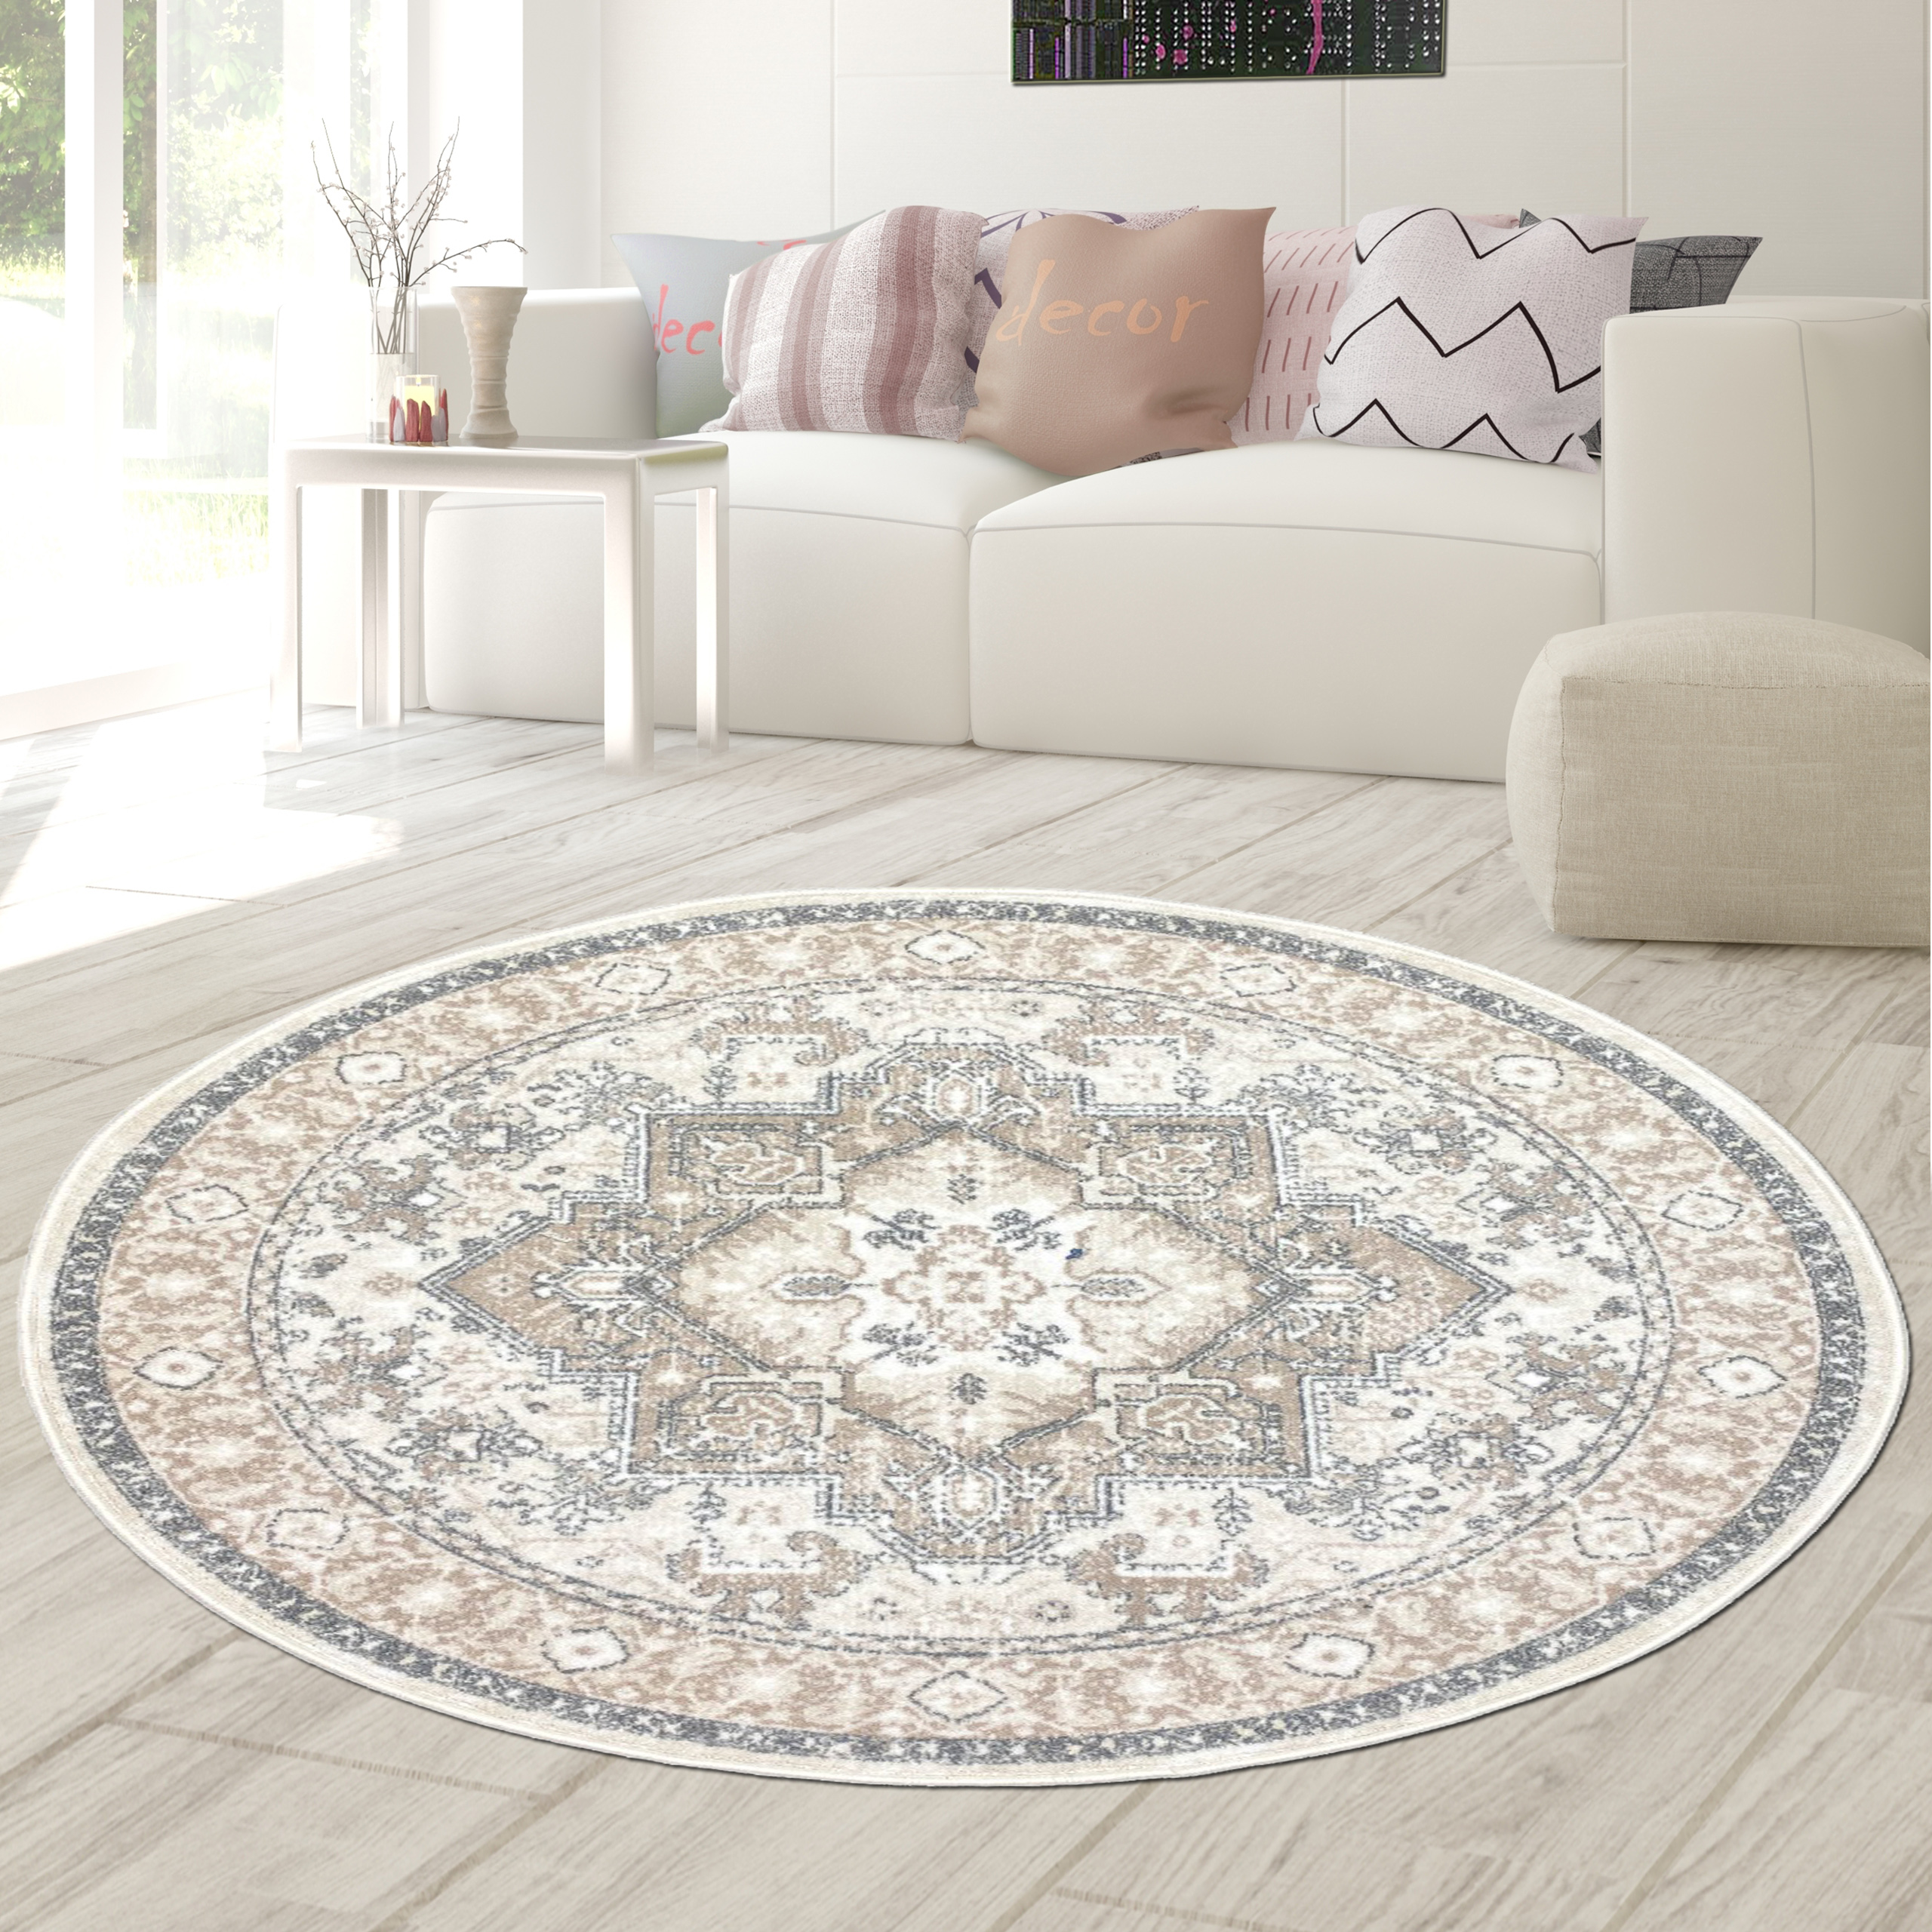 Orientalisch gemütliche Teppiche | Teppich-Traum